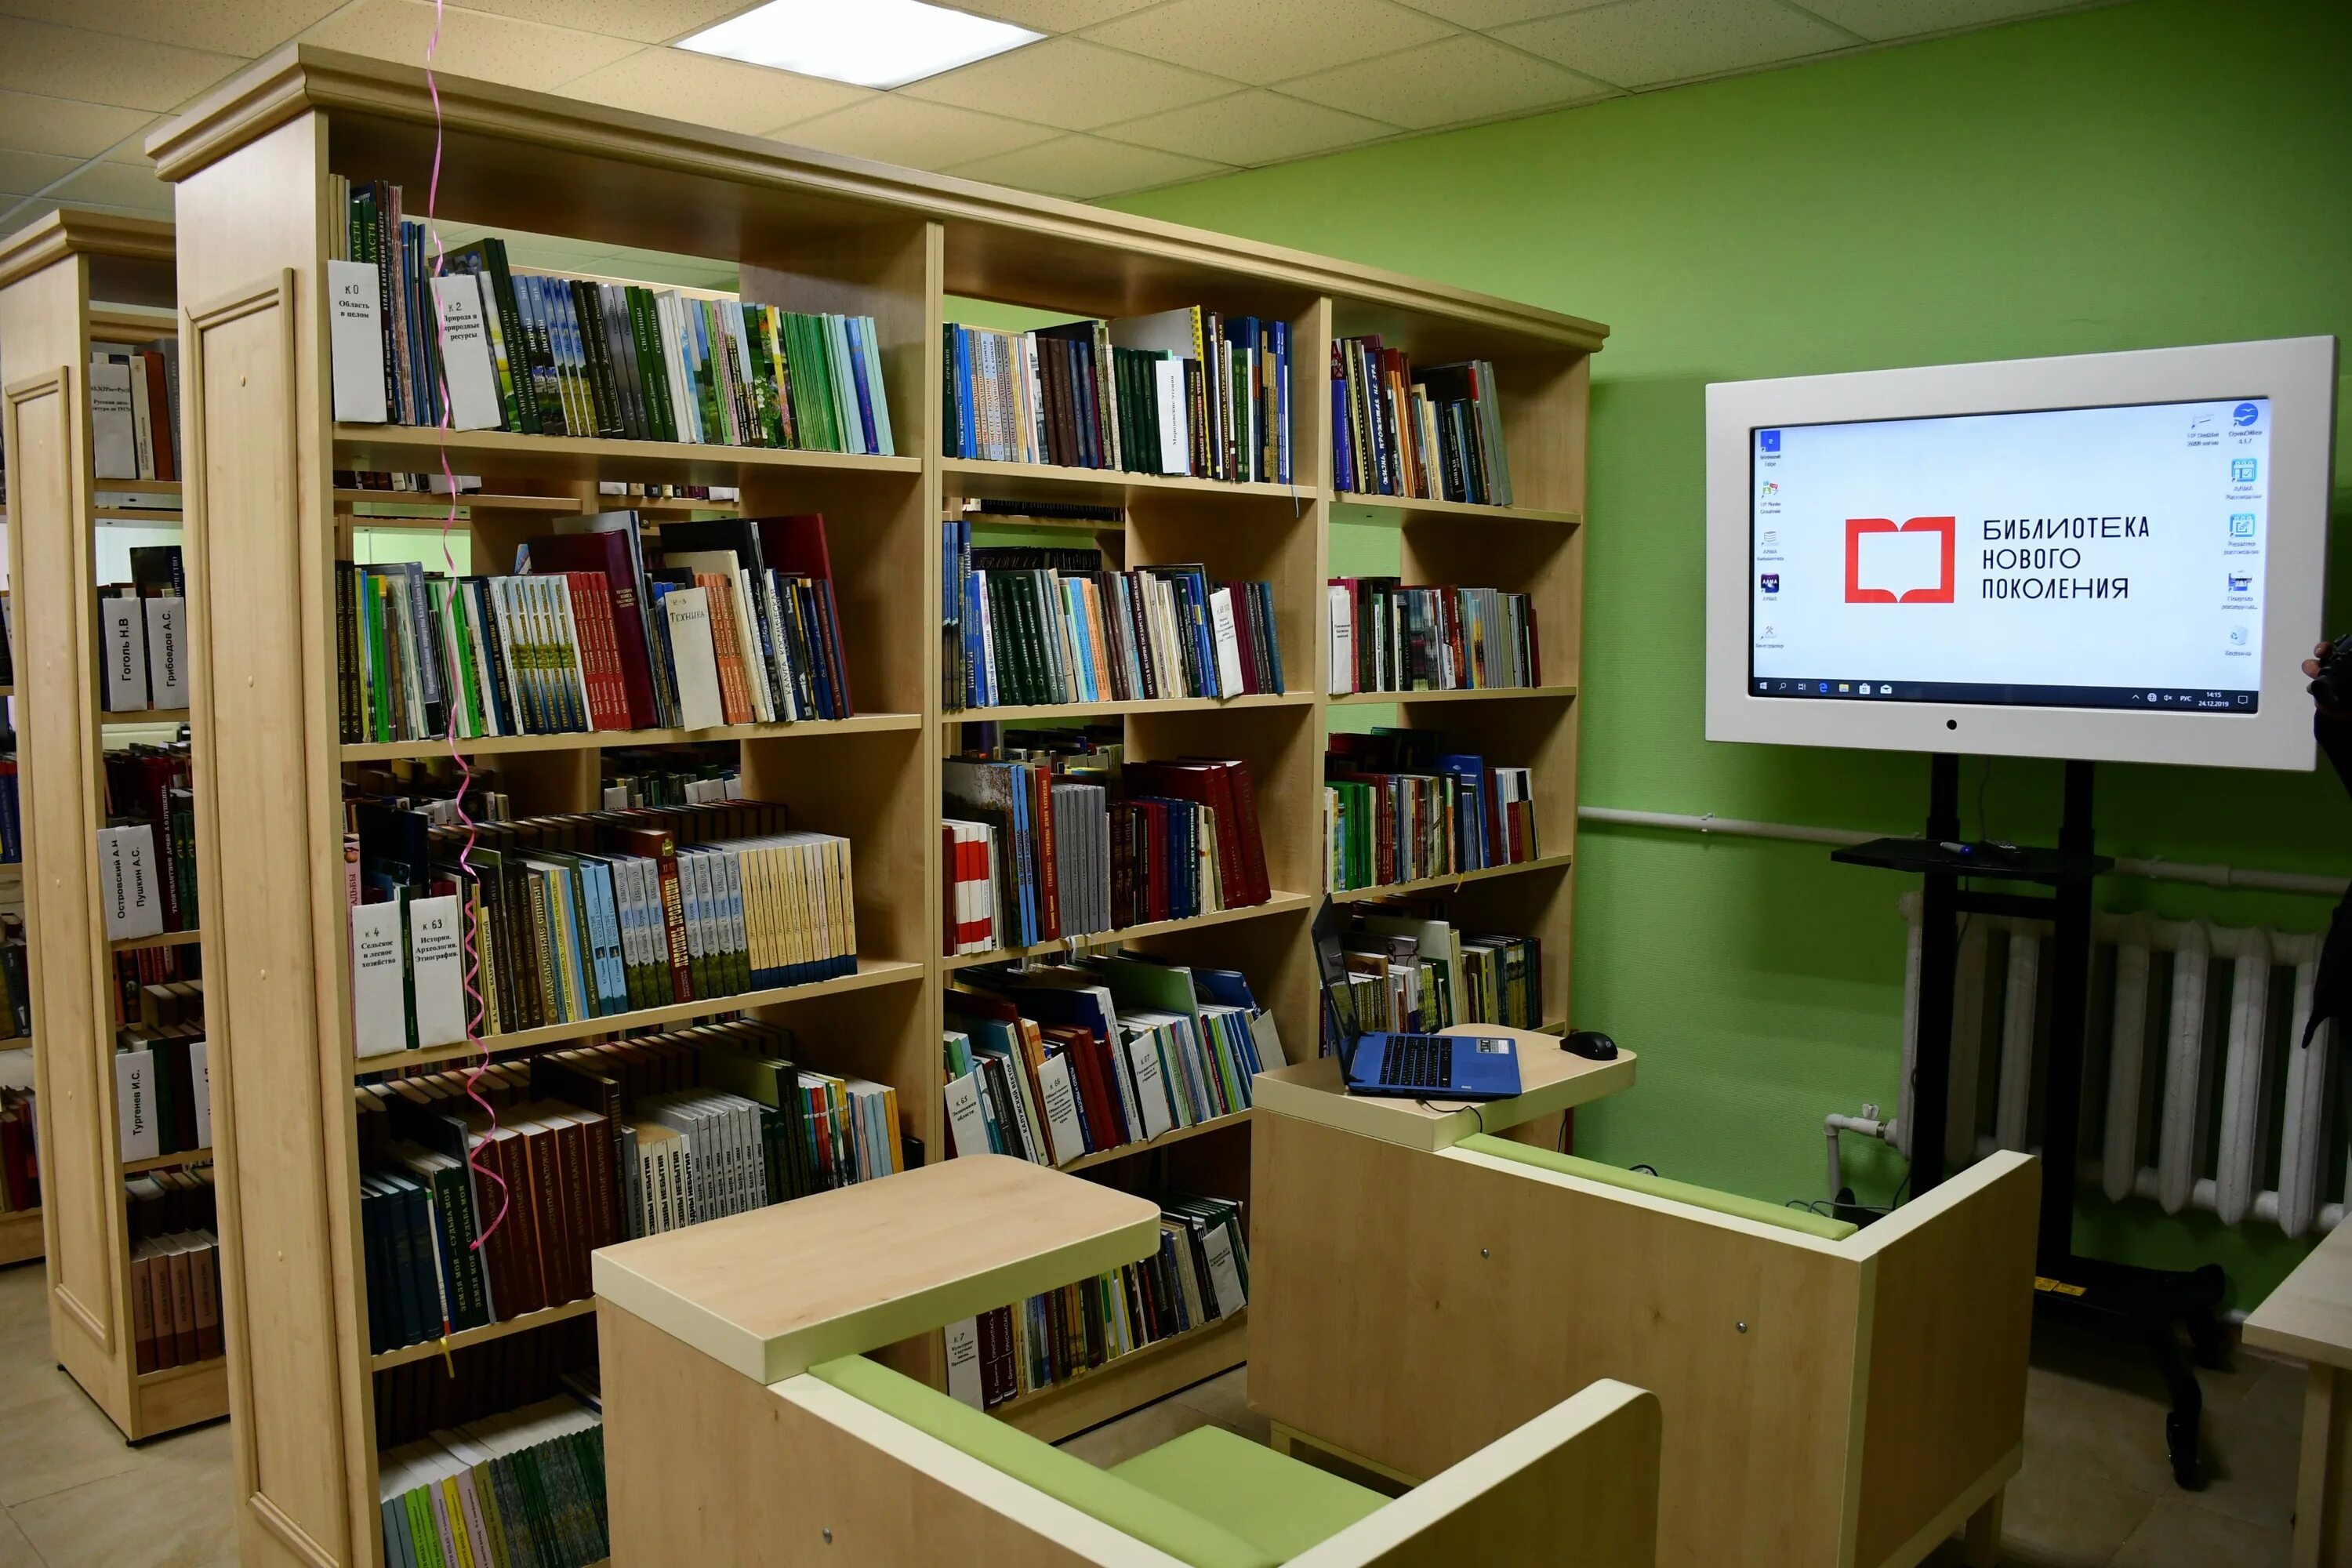 Открыто новых библиотек. Модельная библиотека. Библиотека нового поколения. Муниципальная библиотека. Современная Российская библиотека.